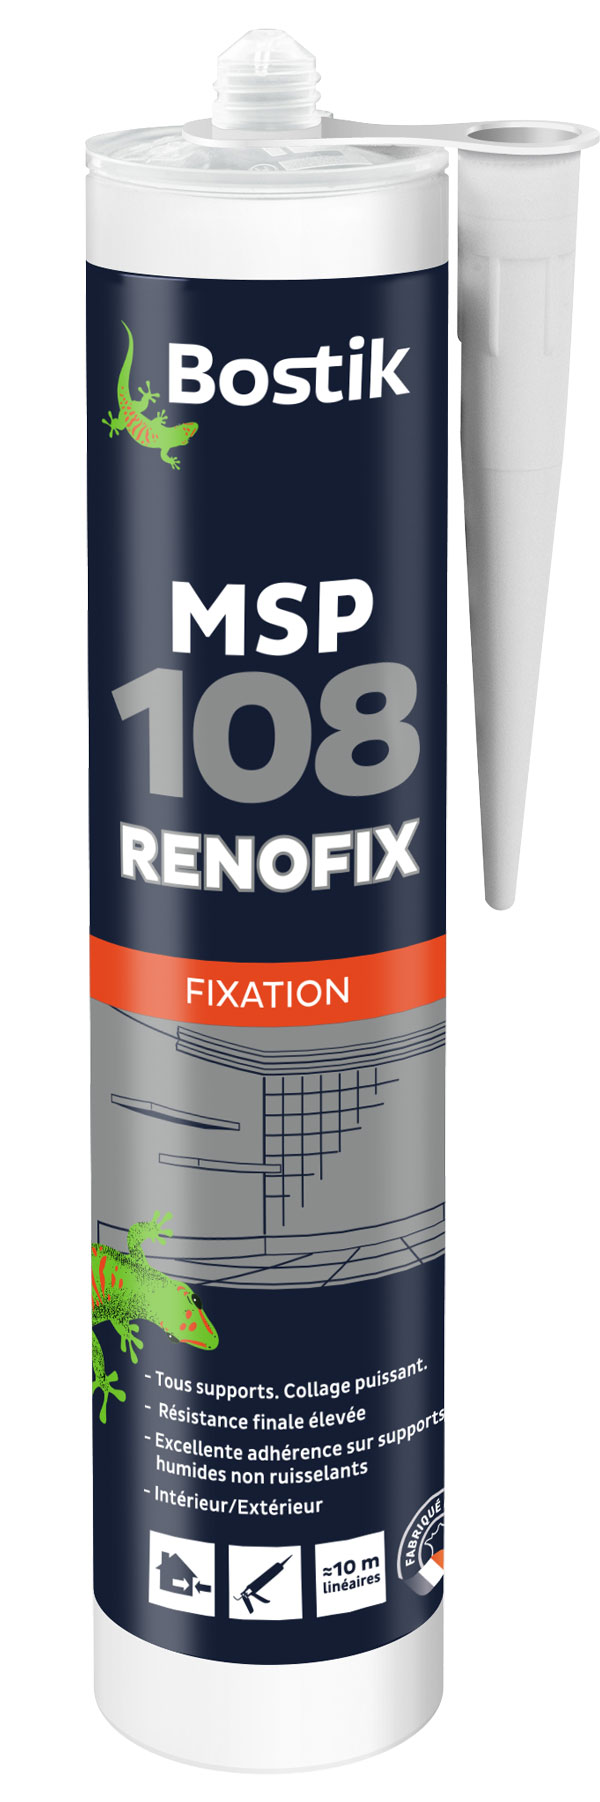 Mastic de fixation MSP 108 RENOFIX © Bostik